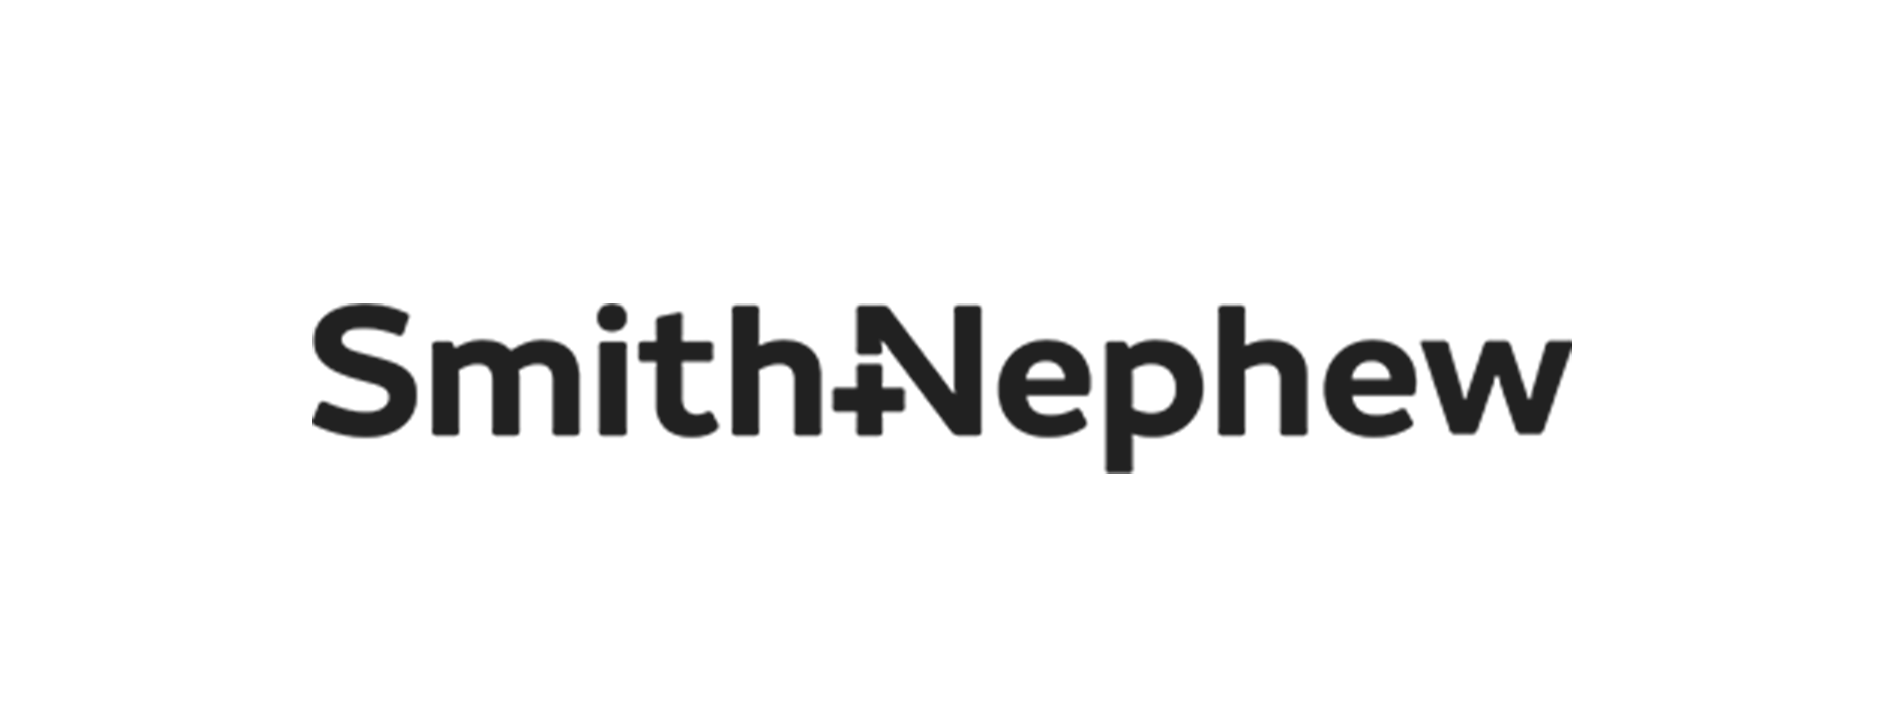 Smithnephew2 logo 3x